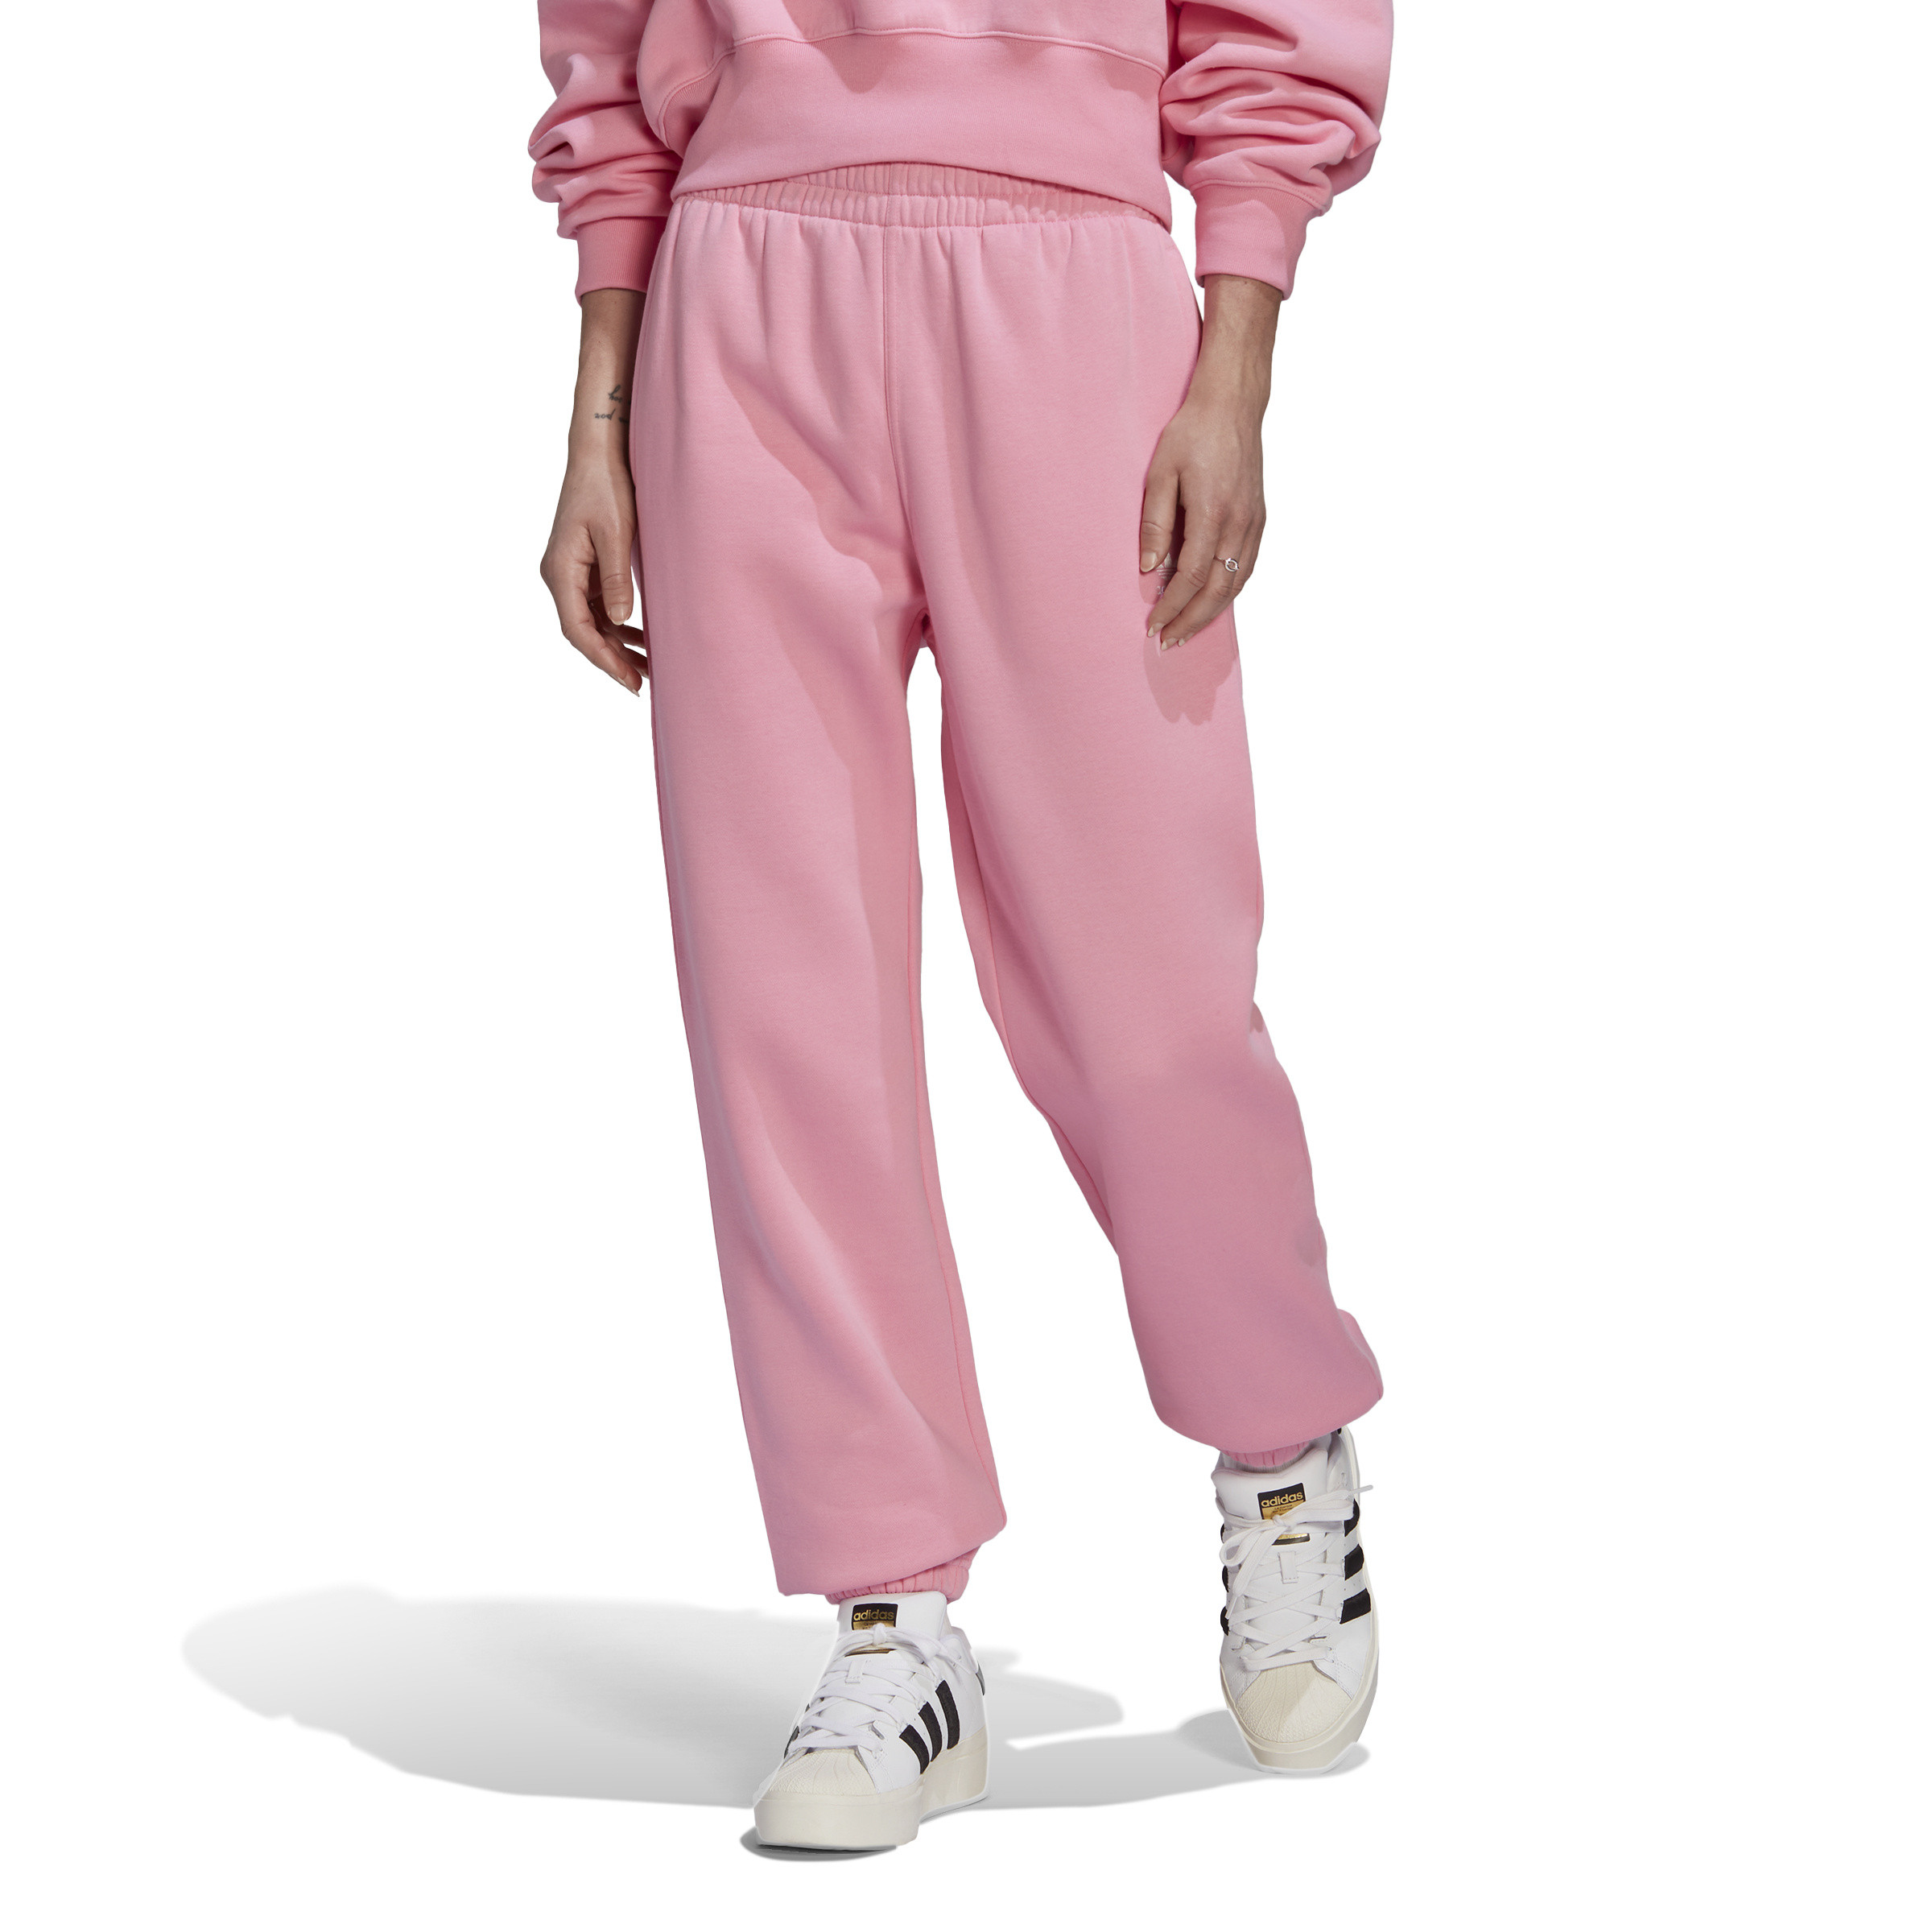 Adidas - Pantaloni adicolor essentials fleece joggers, Rosa, large image number 3